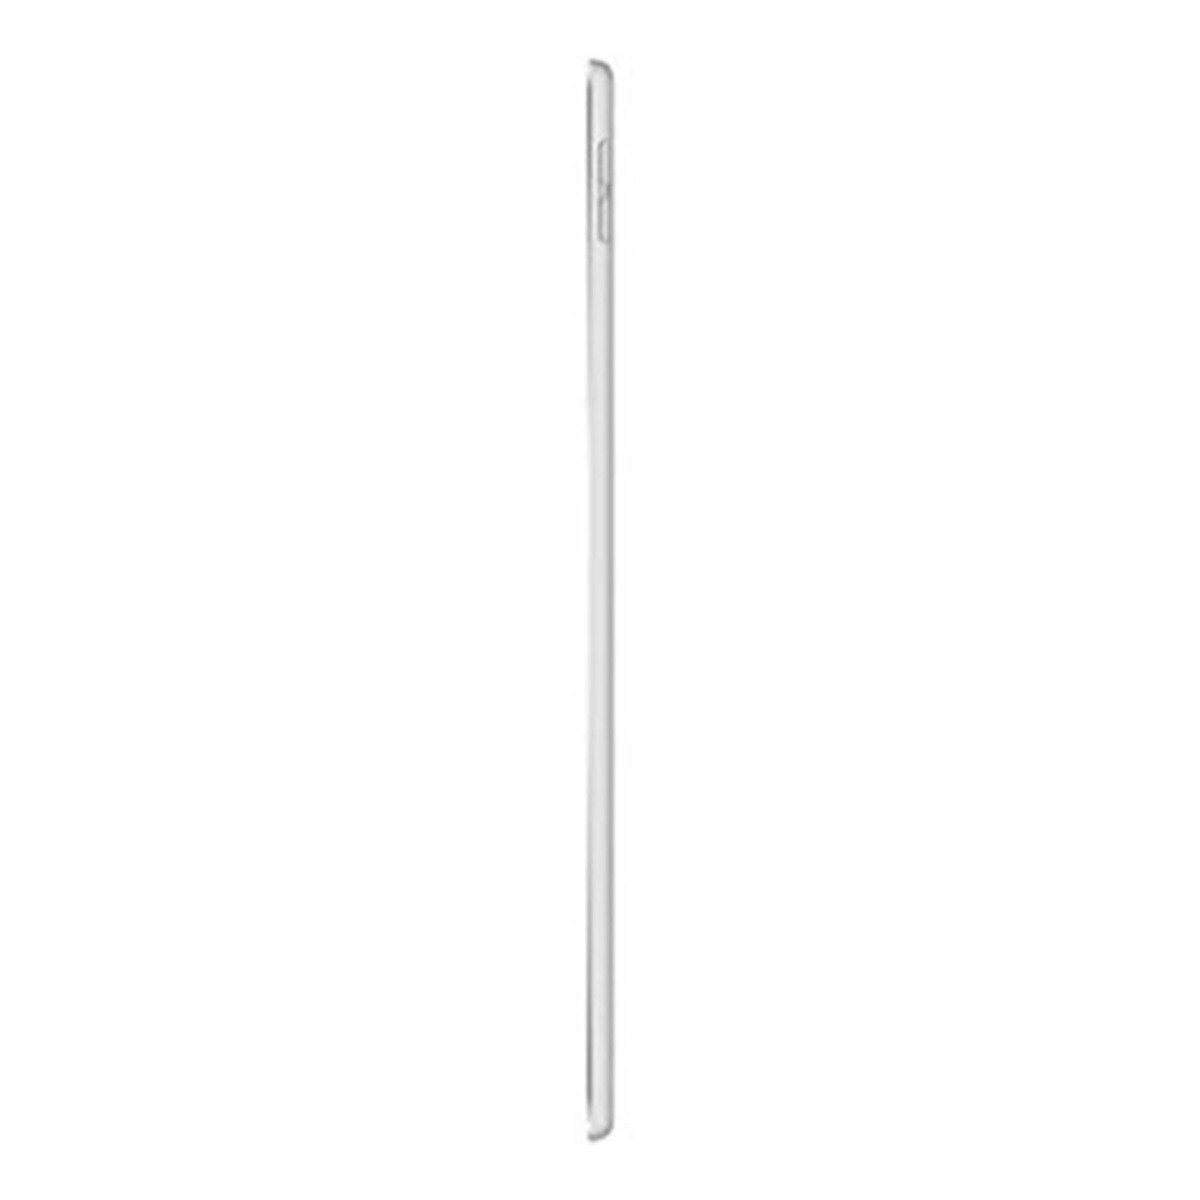 Apple iPad Air (2019) - iOS (Wi-Fi, 64GB) 10.5inch Silver